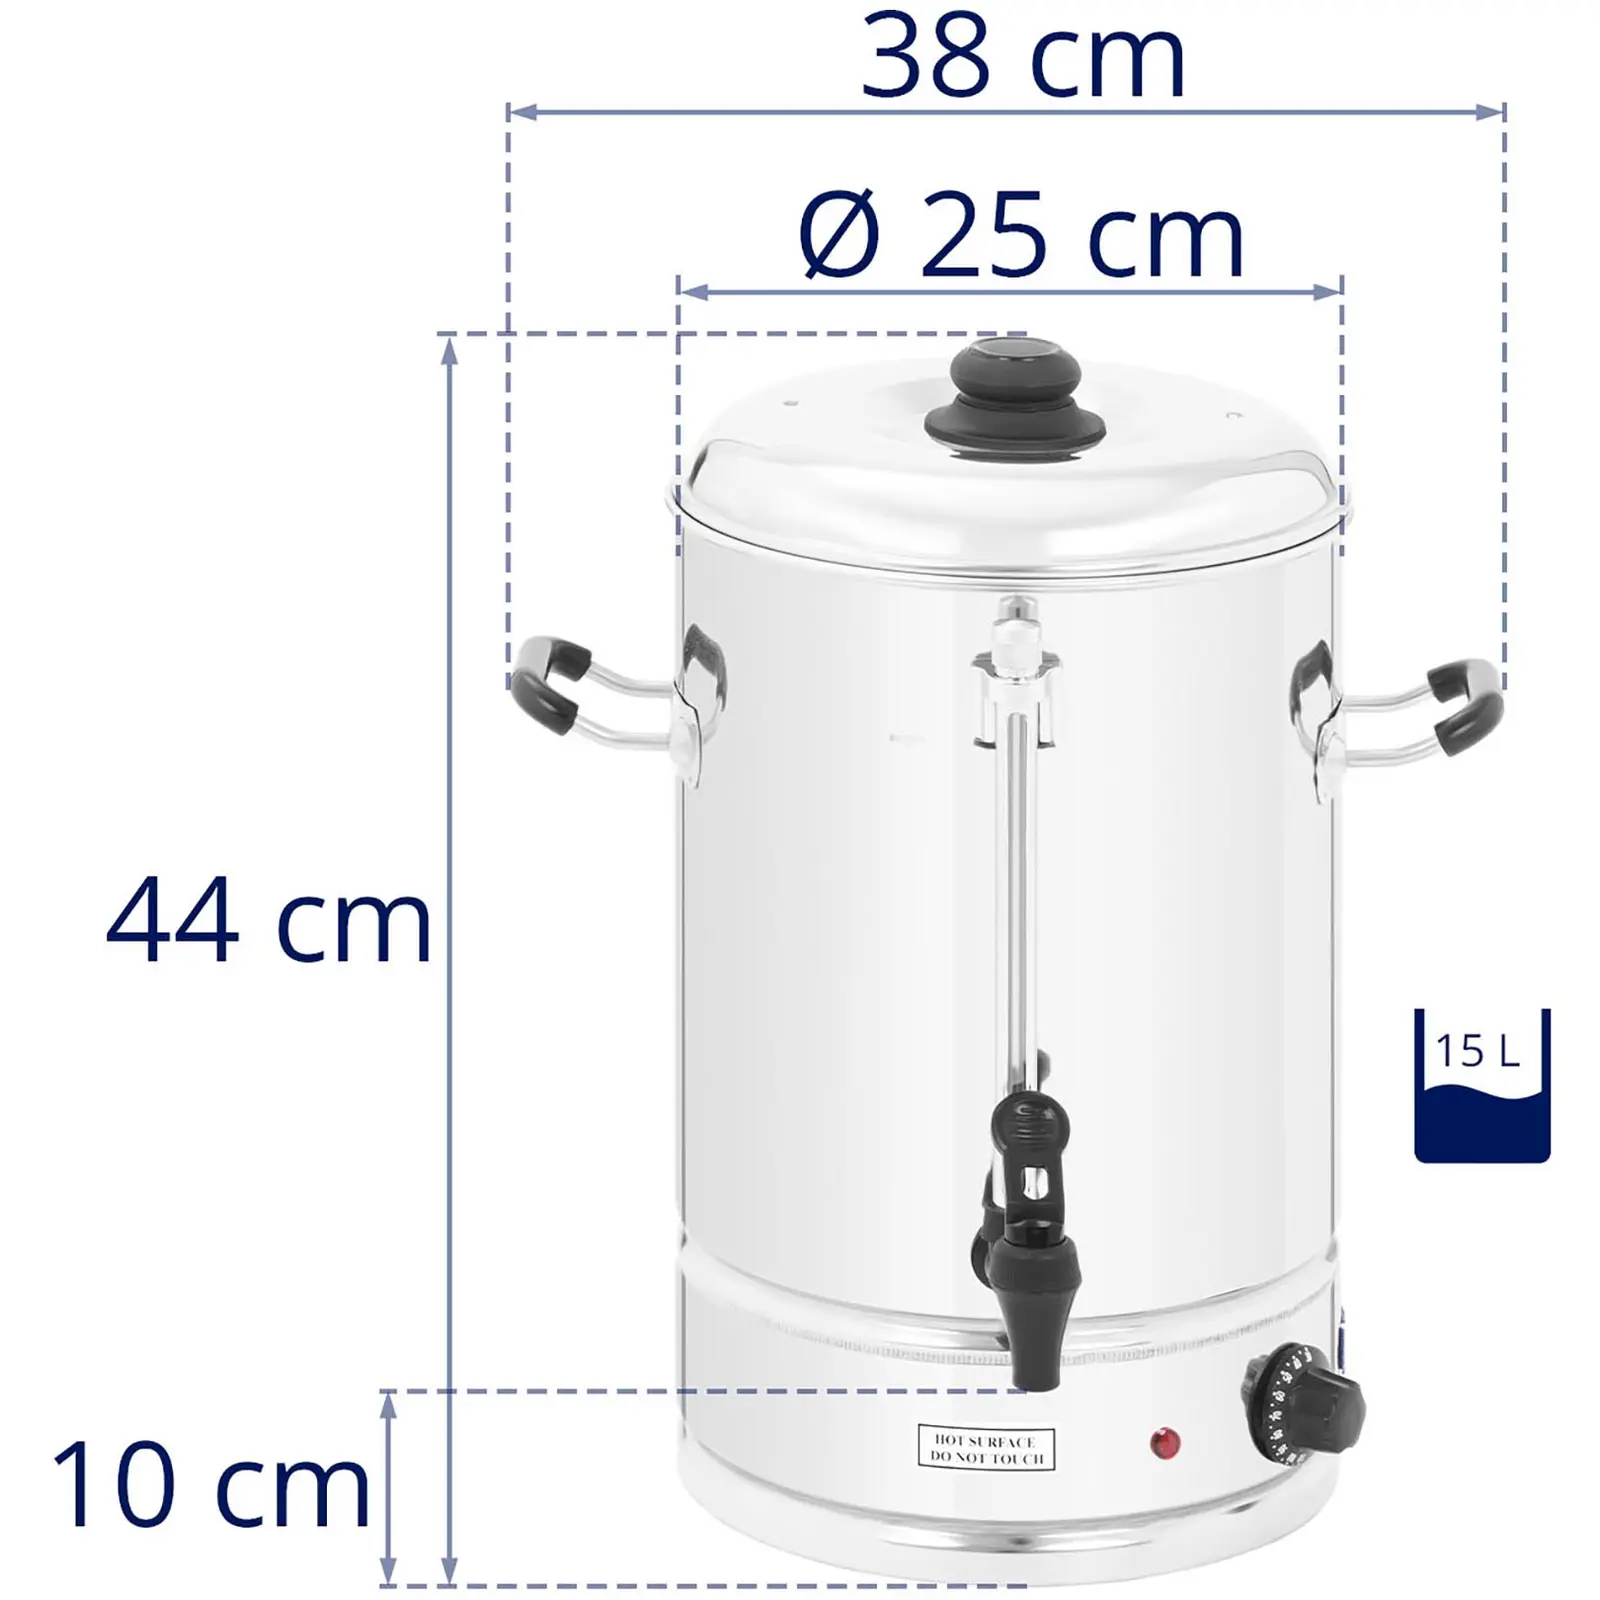 Bollitore elettrico professionale - 15 litri - 2.500 W - Indicatore di riempimento - Impugnature ergonomiche - Leggero